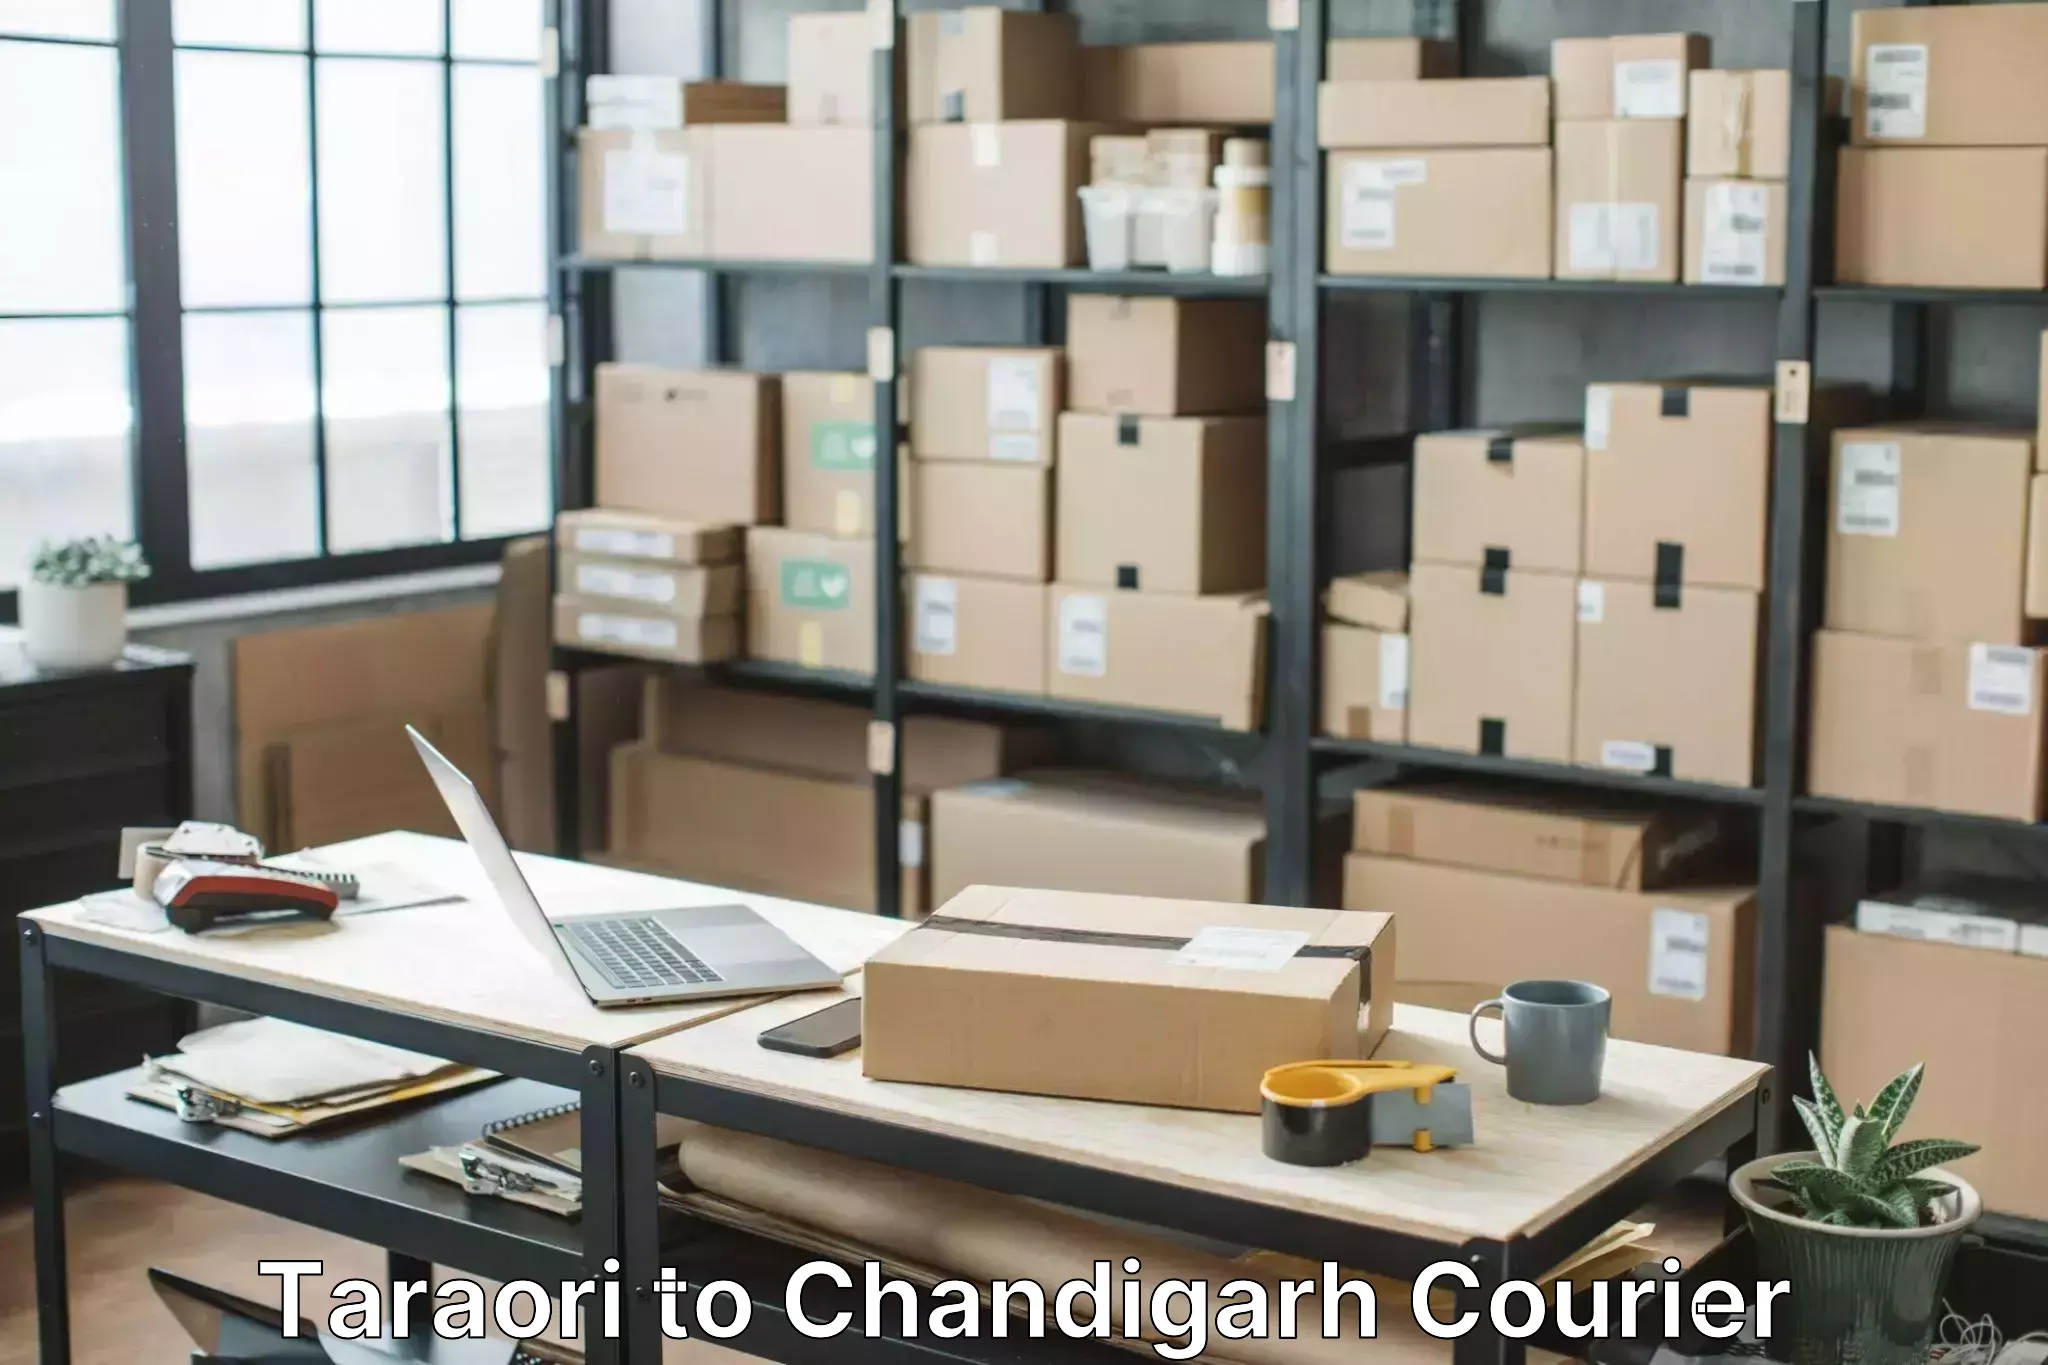 Moving and packing experts Taraori to Chandigarh